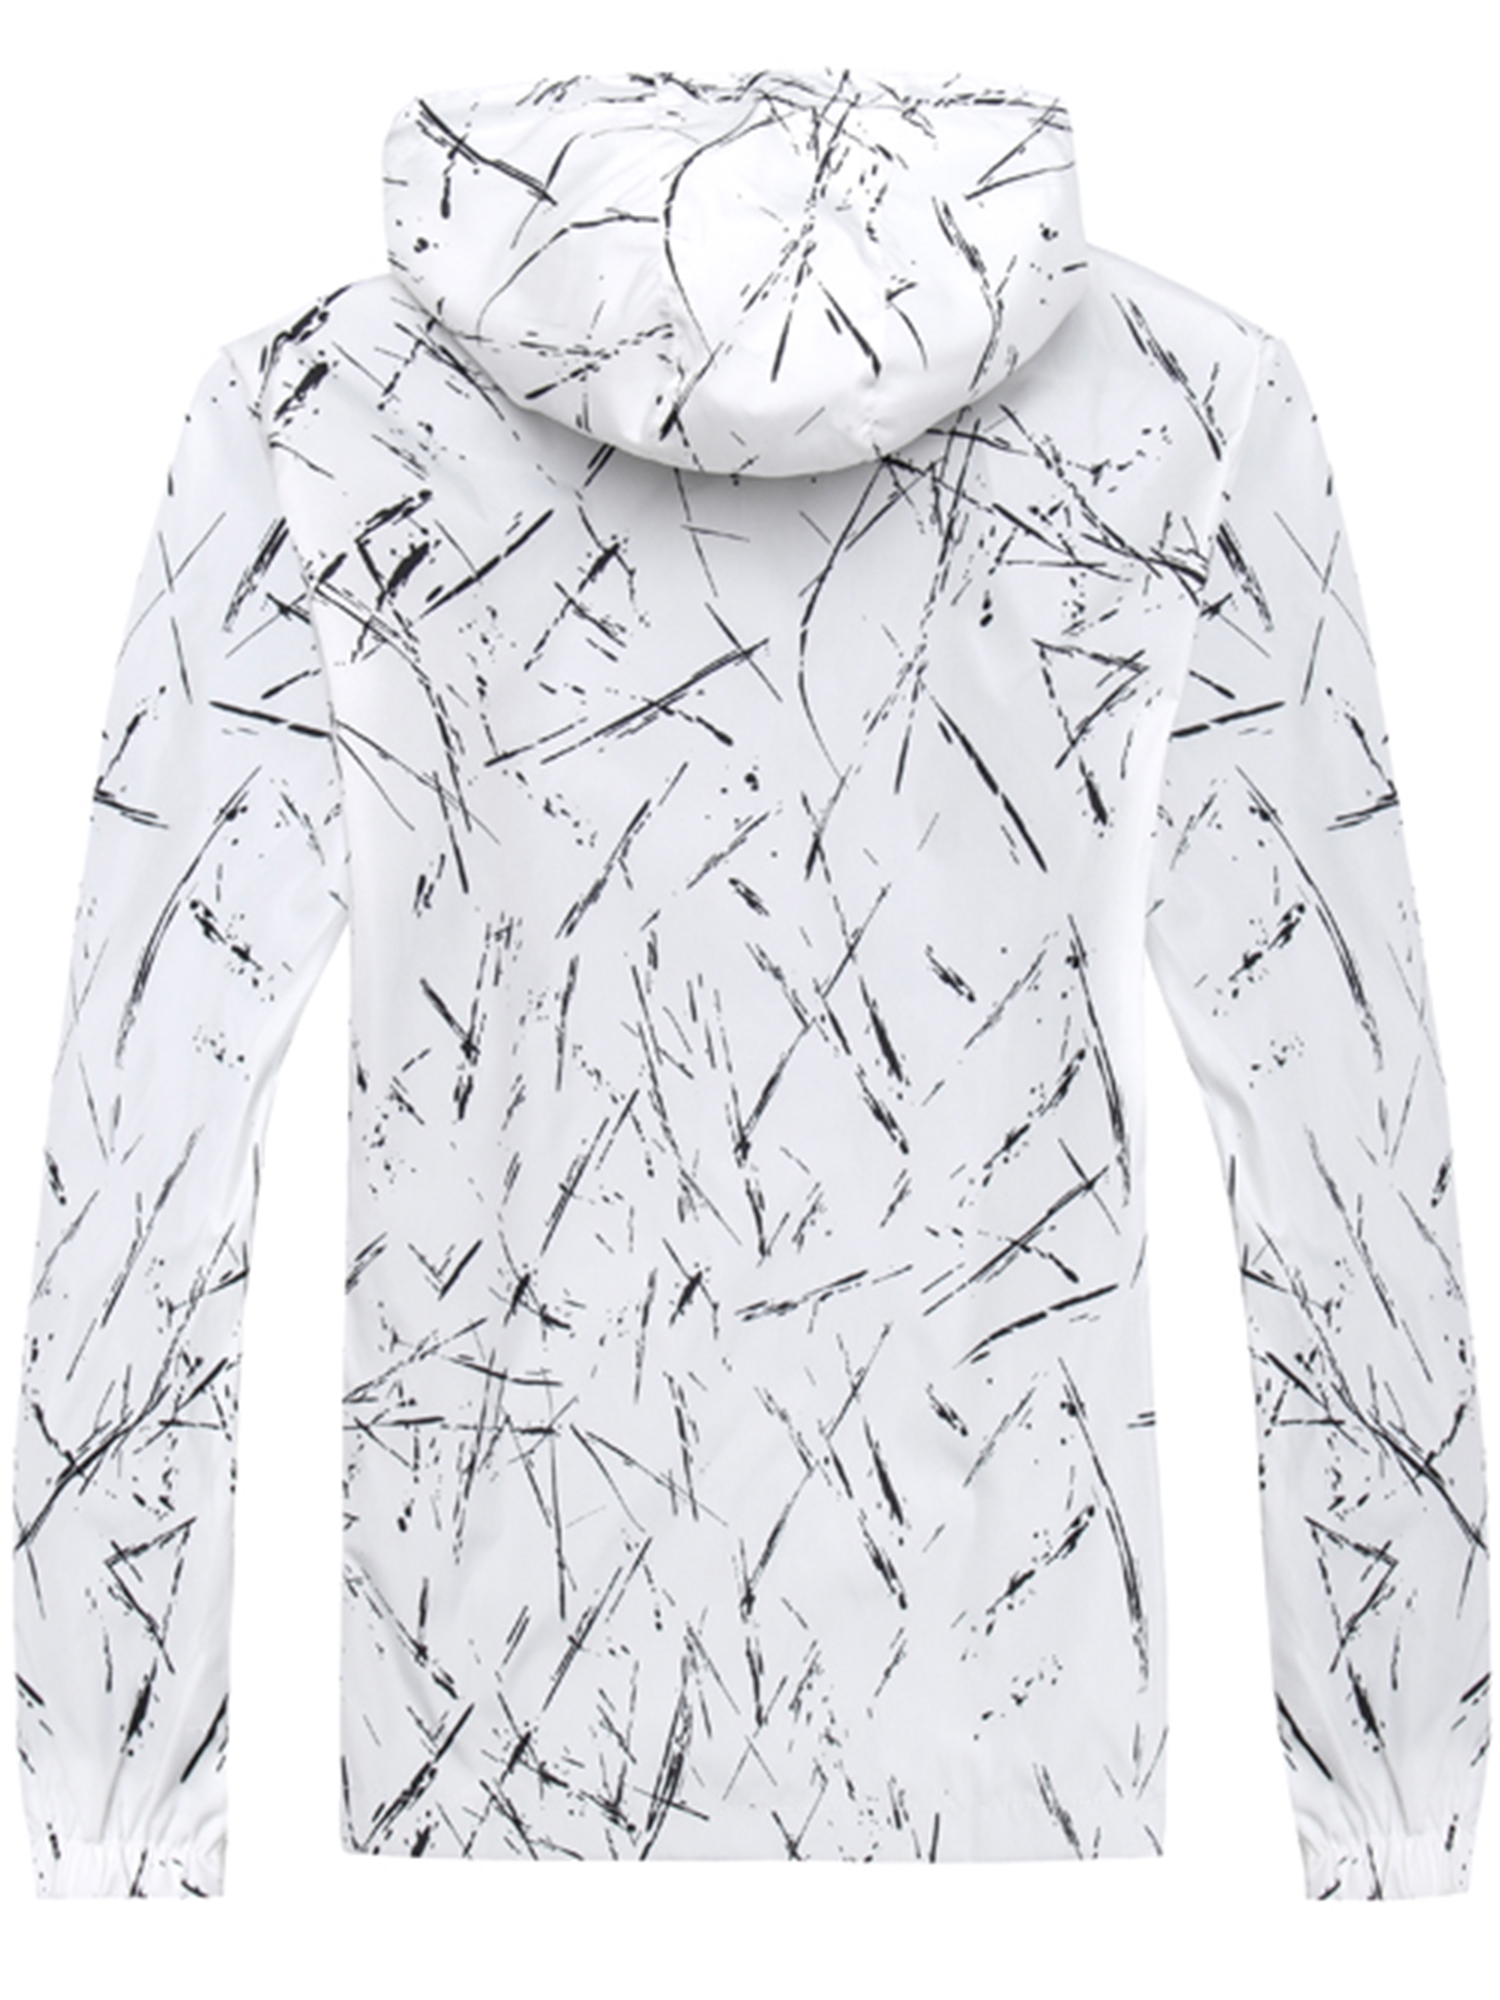 UKAP Men Hoodies Anorak Coat Jacket Zip Front Pocket Windbreaker Outdoor Sports Outwear Drawstring Up to Size 6XL Overcoat - image 3 of 3